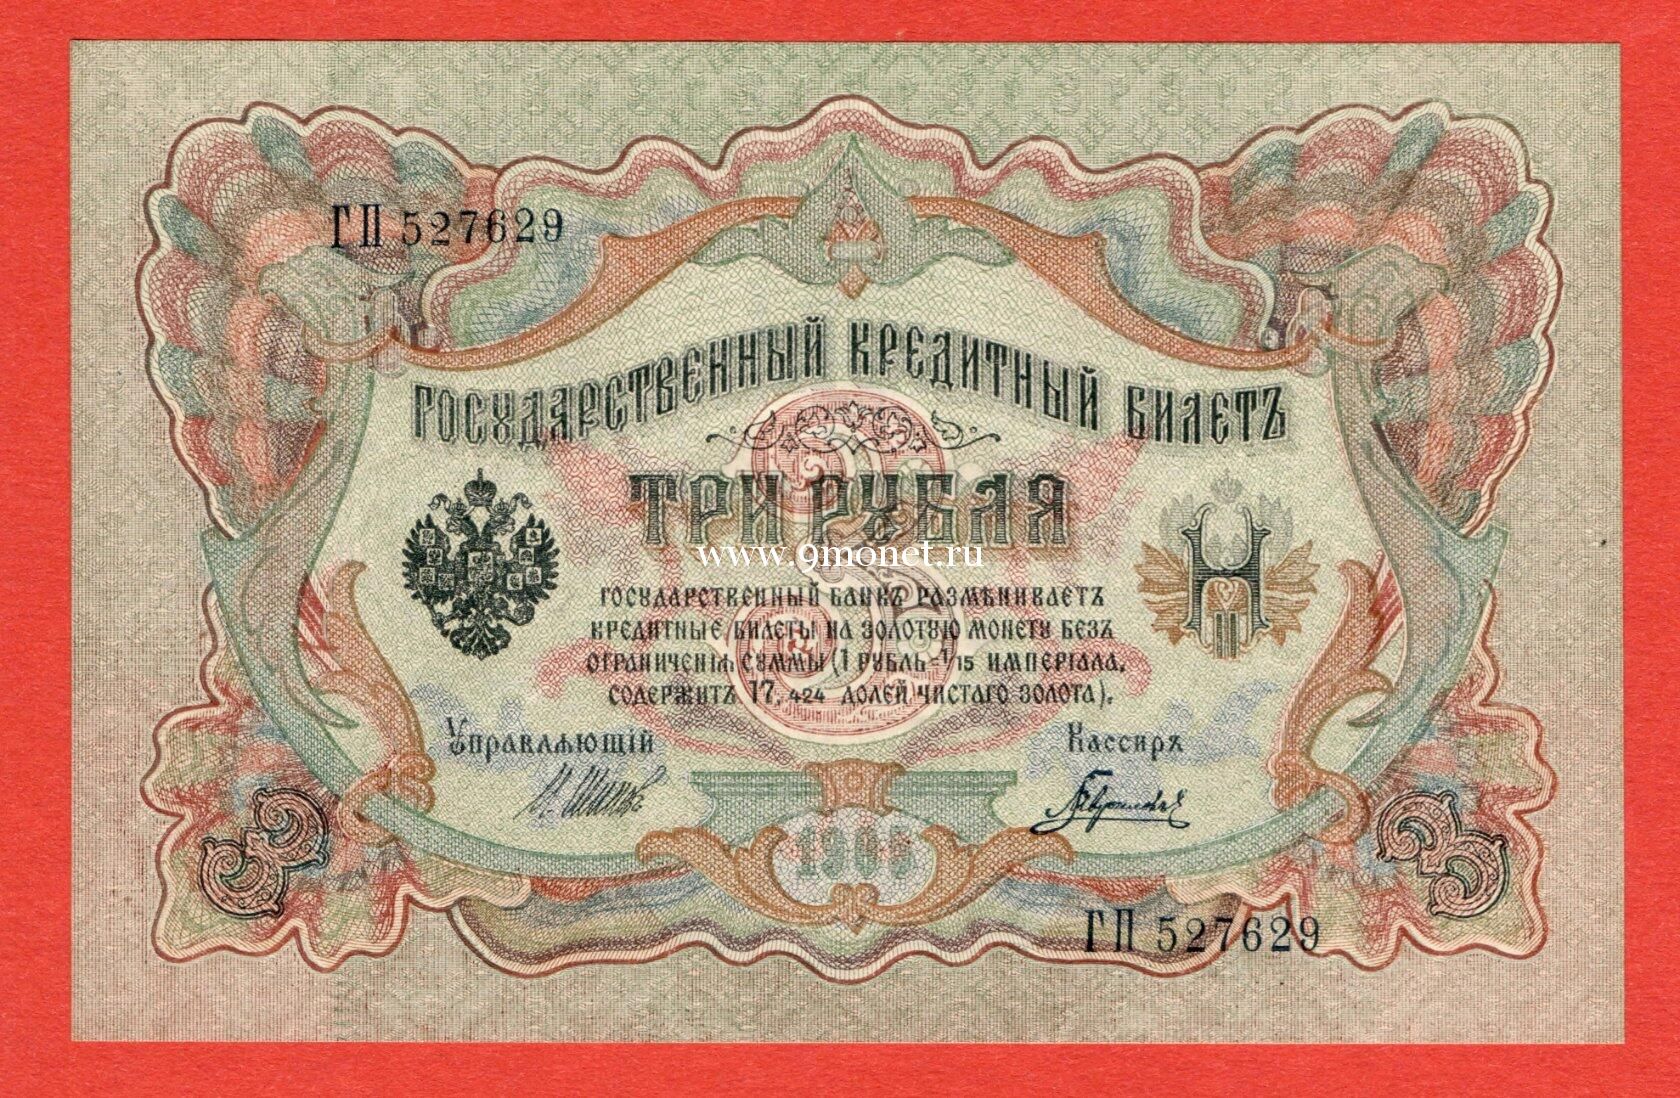 Банкнота 3 рубля 1905 года Шипов-Гаврилов